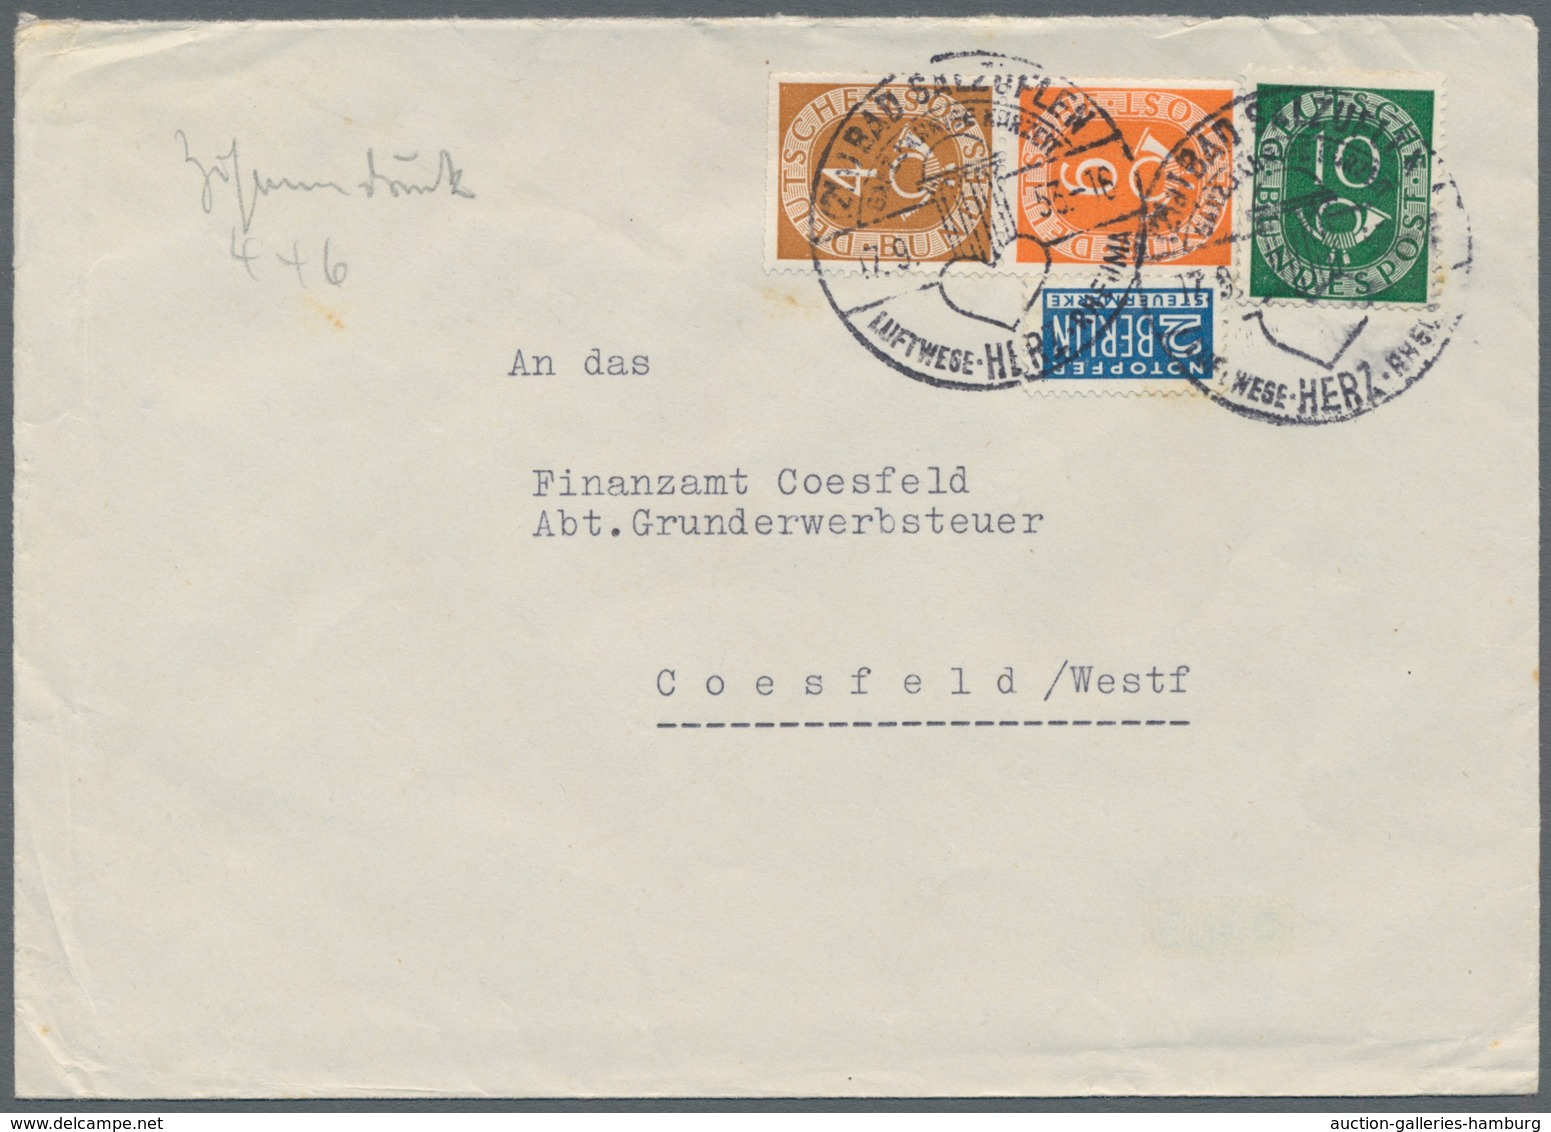 Bundesrepublik - Zusammendrucke: 1951-1953, Partie von 7 Belegen mit Zusammendrucken der Posthornser